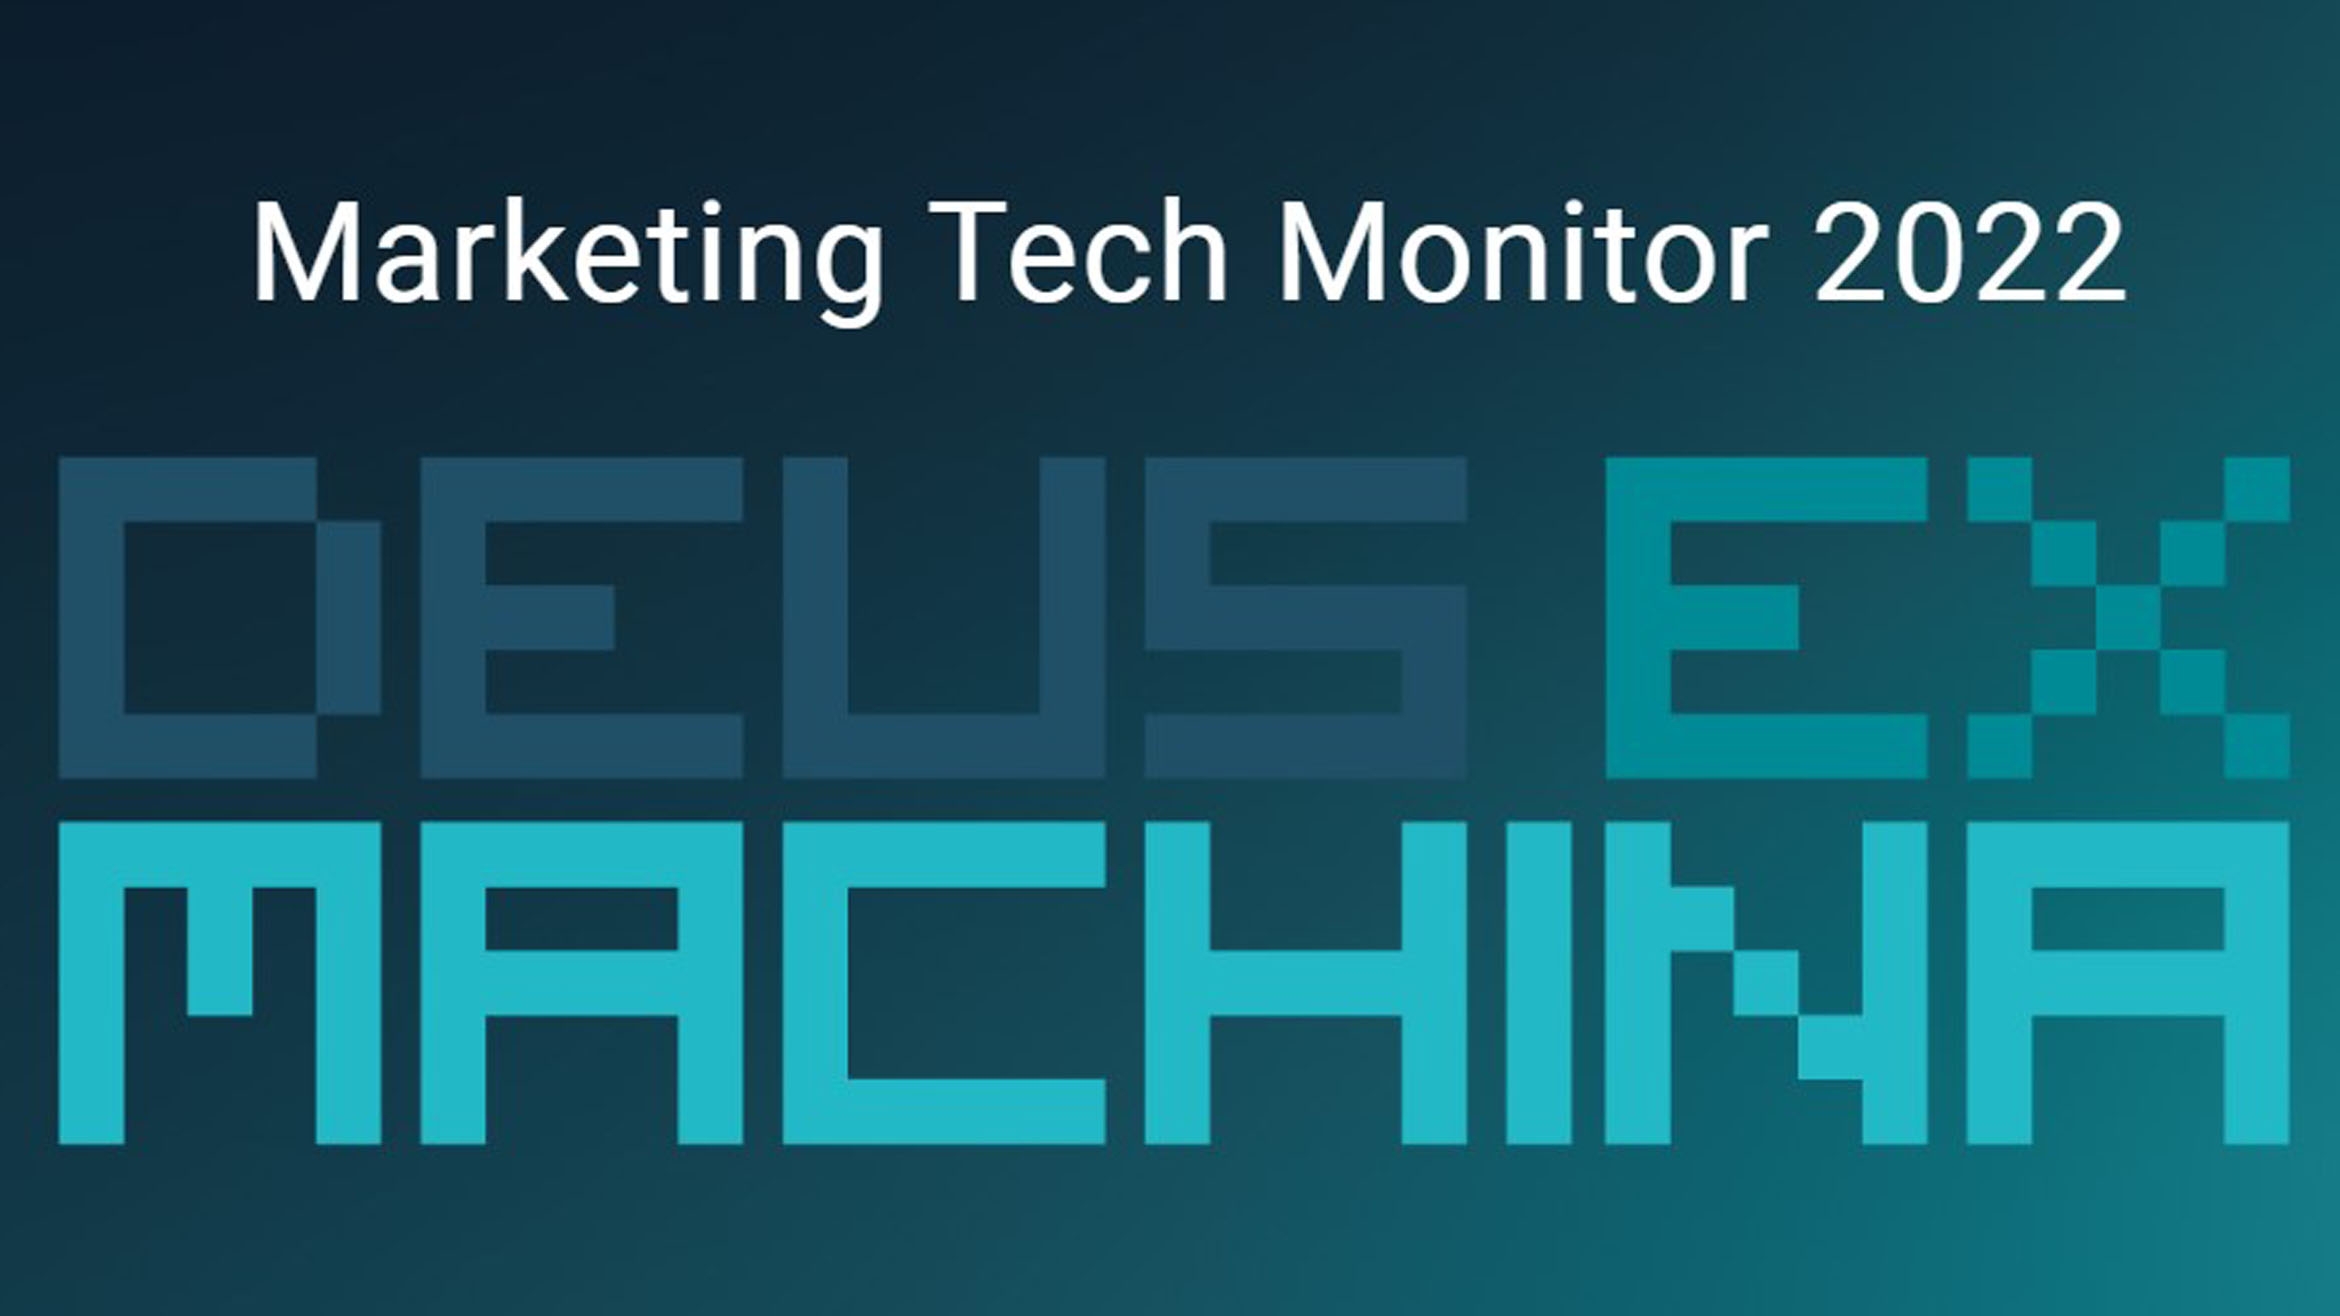 Der Marketing Tech Monitor 2022 ist heute erschienen